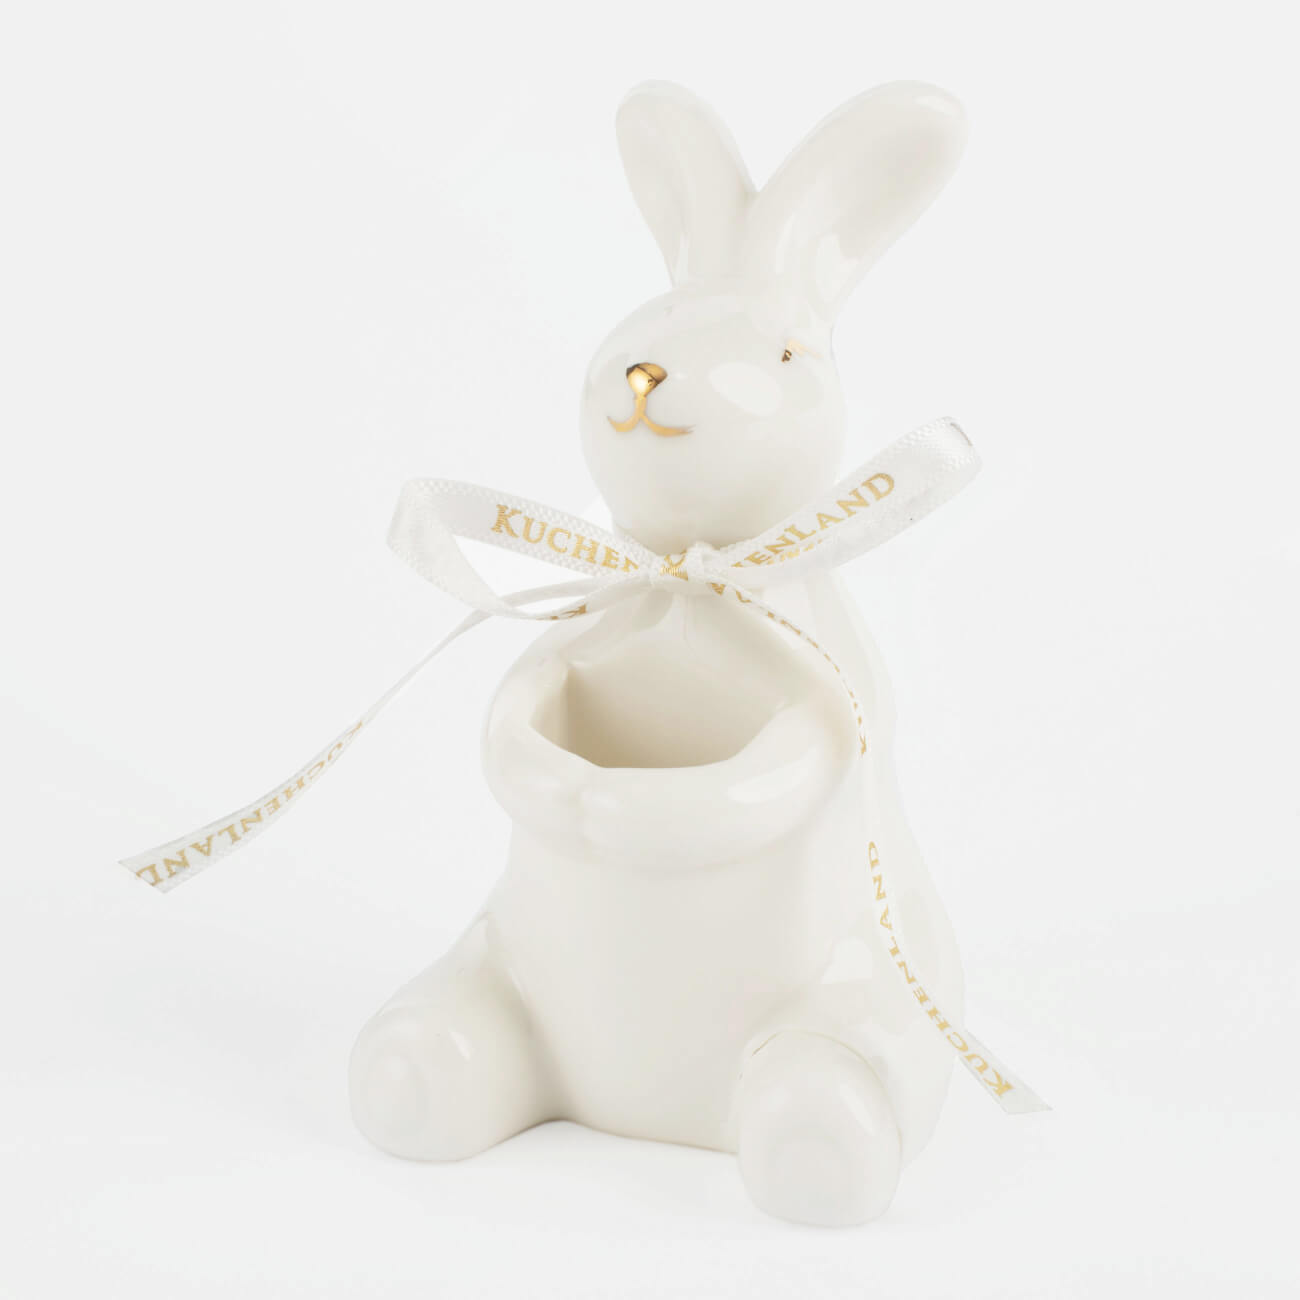 Подставка для зубочисток, 10 см, фарфор P, бело-золотистая, Кролик, Easter gold подставка для зубочисток marshmallows